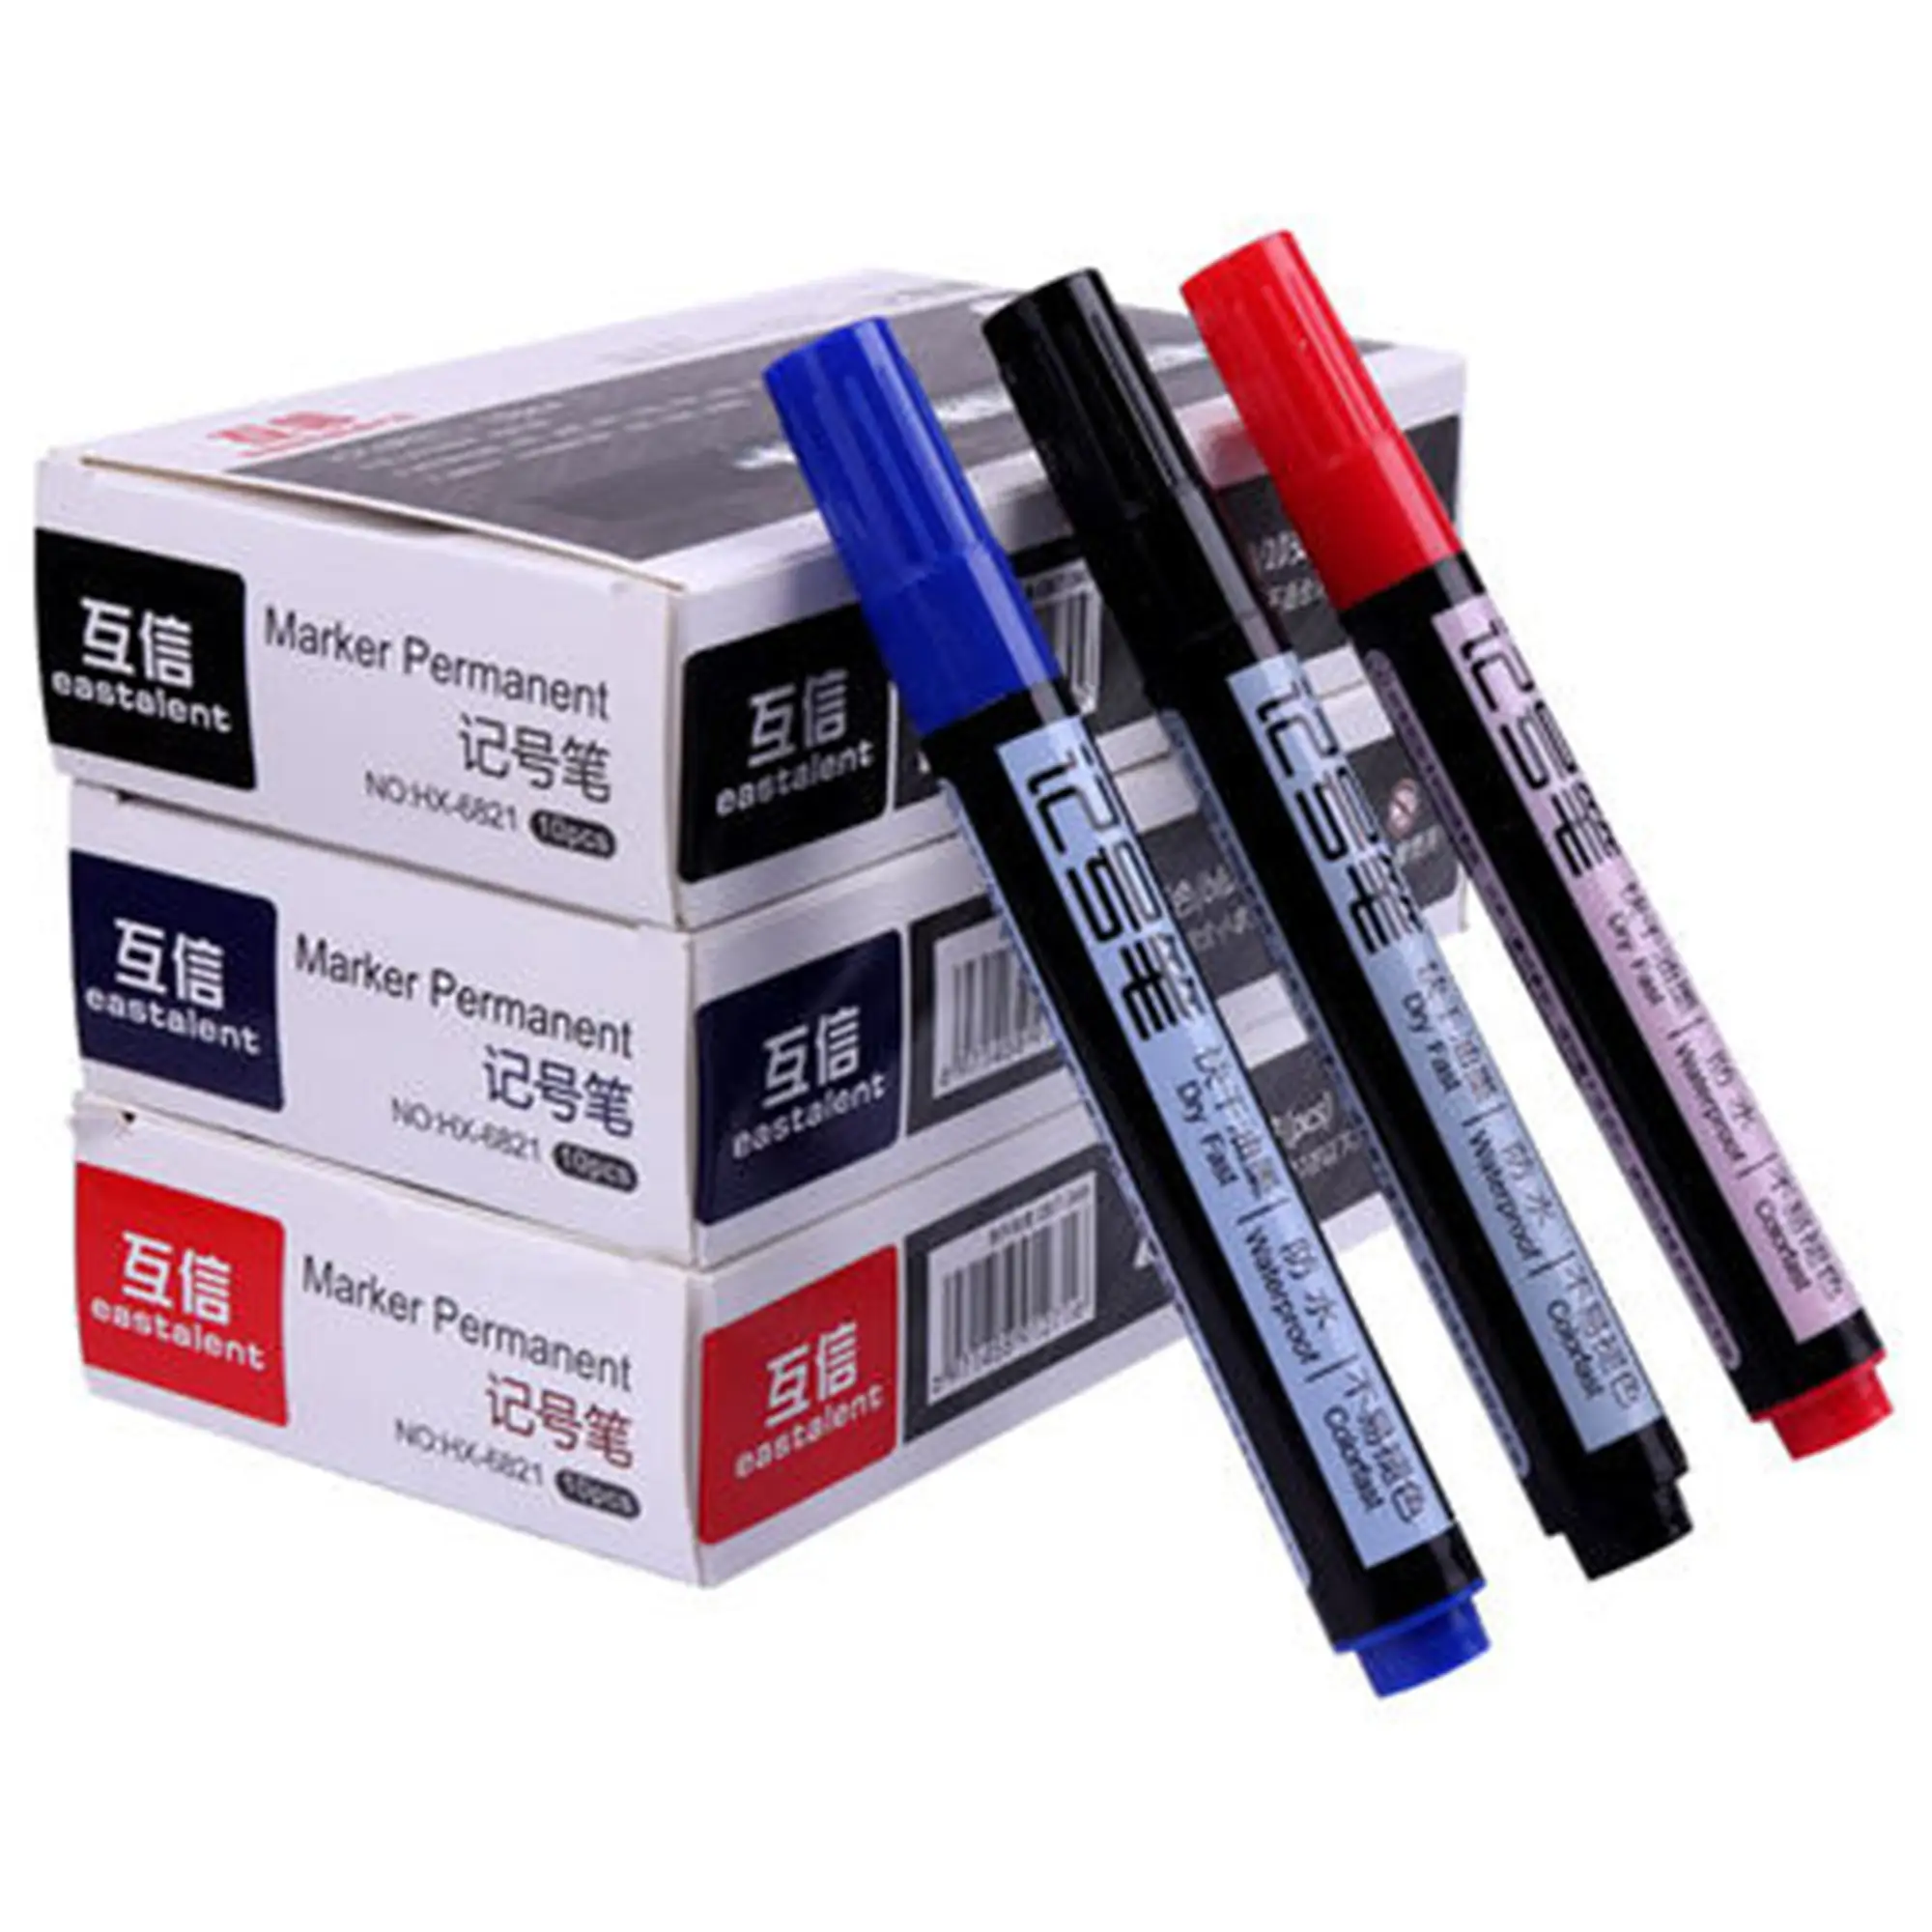 Ermanent-material de papelería para escuela y uso de oficina (HX-6821), negro, rojo y azul